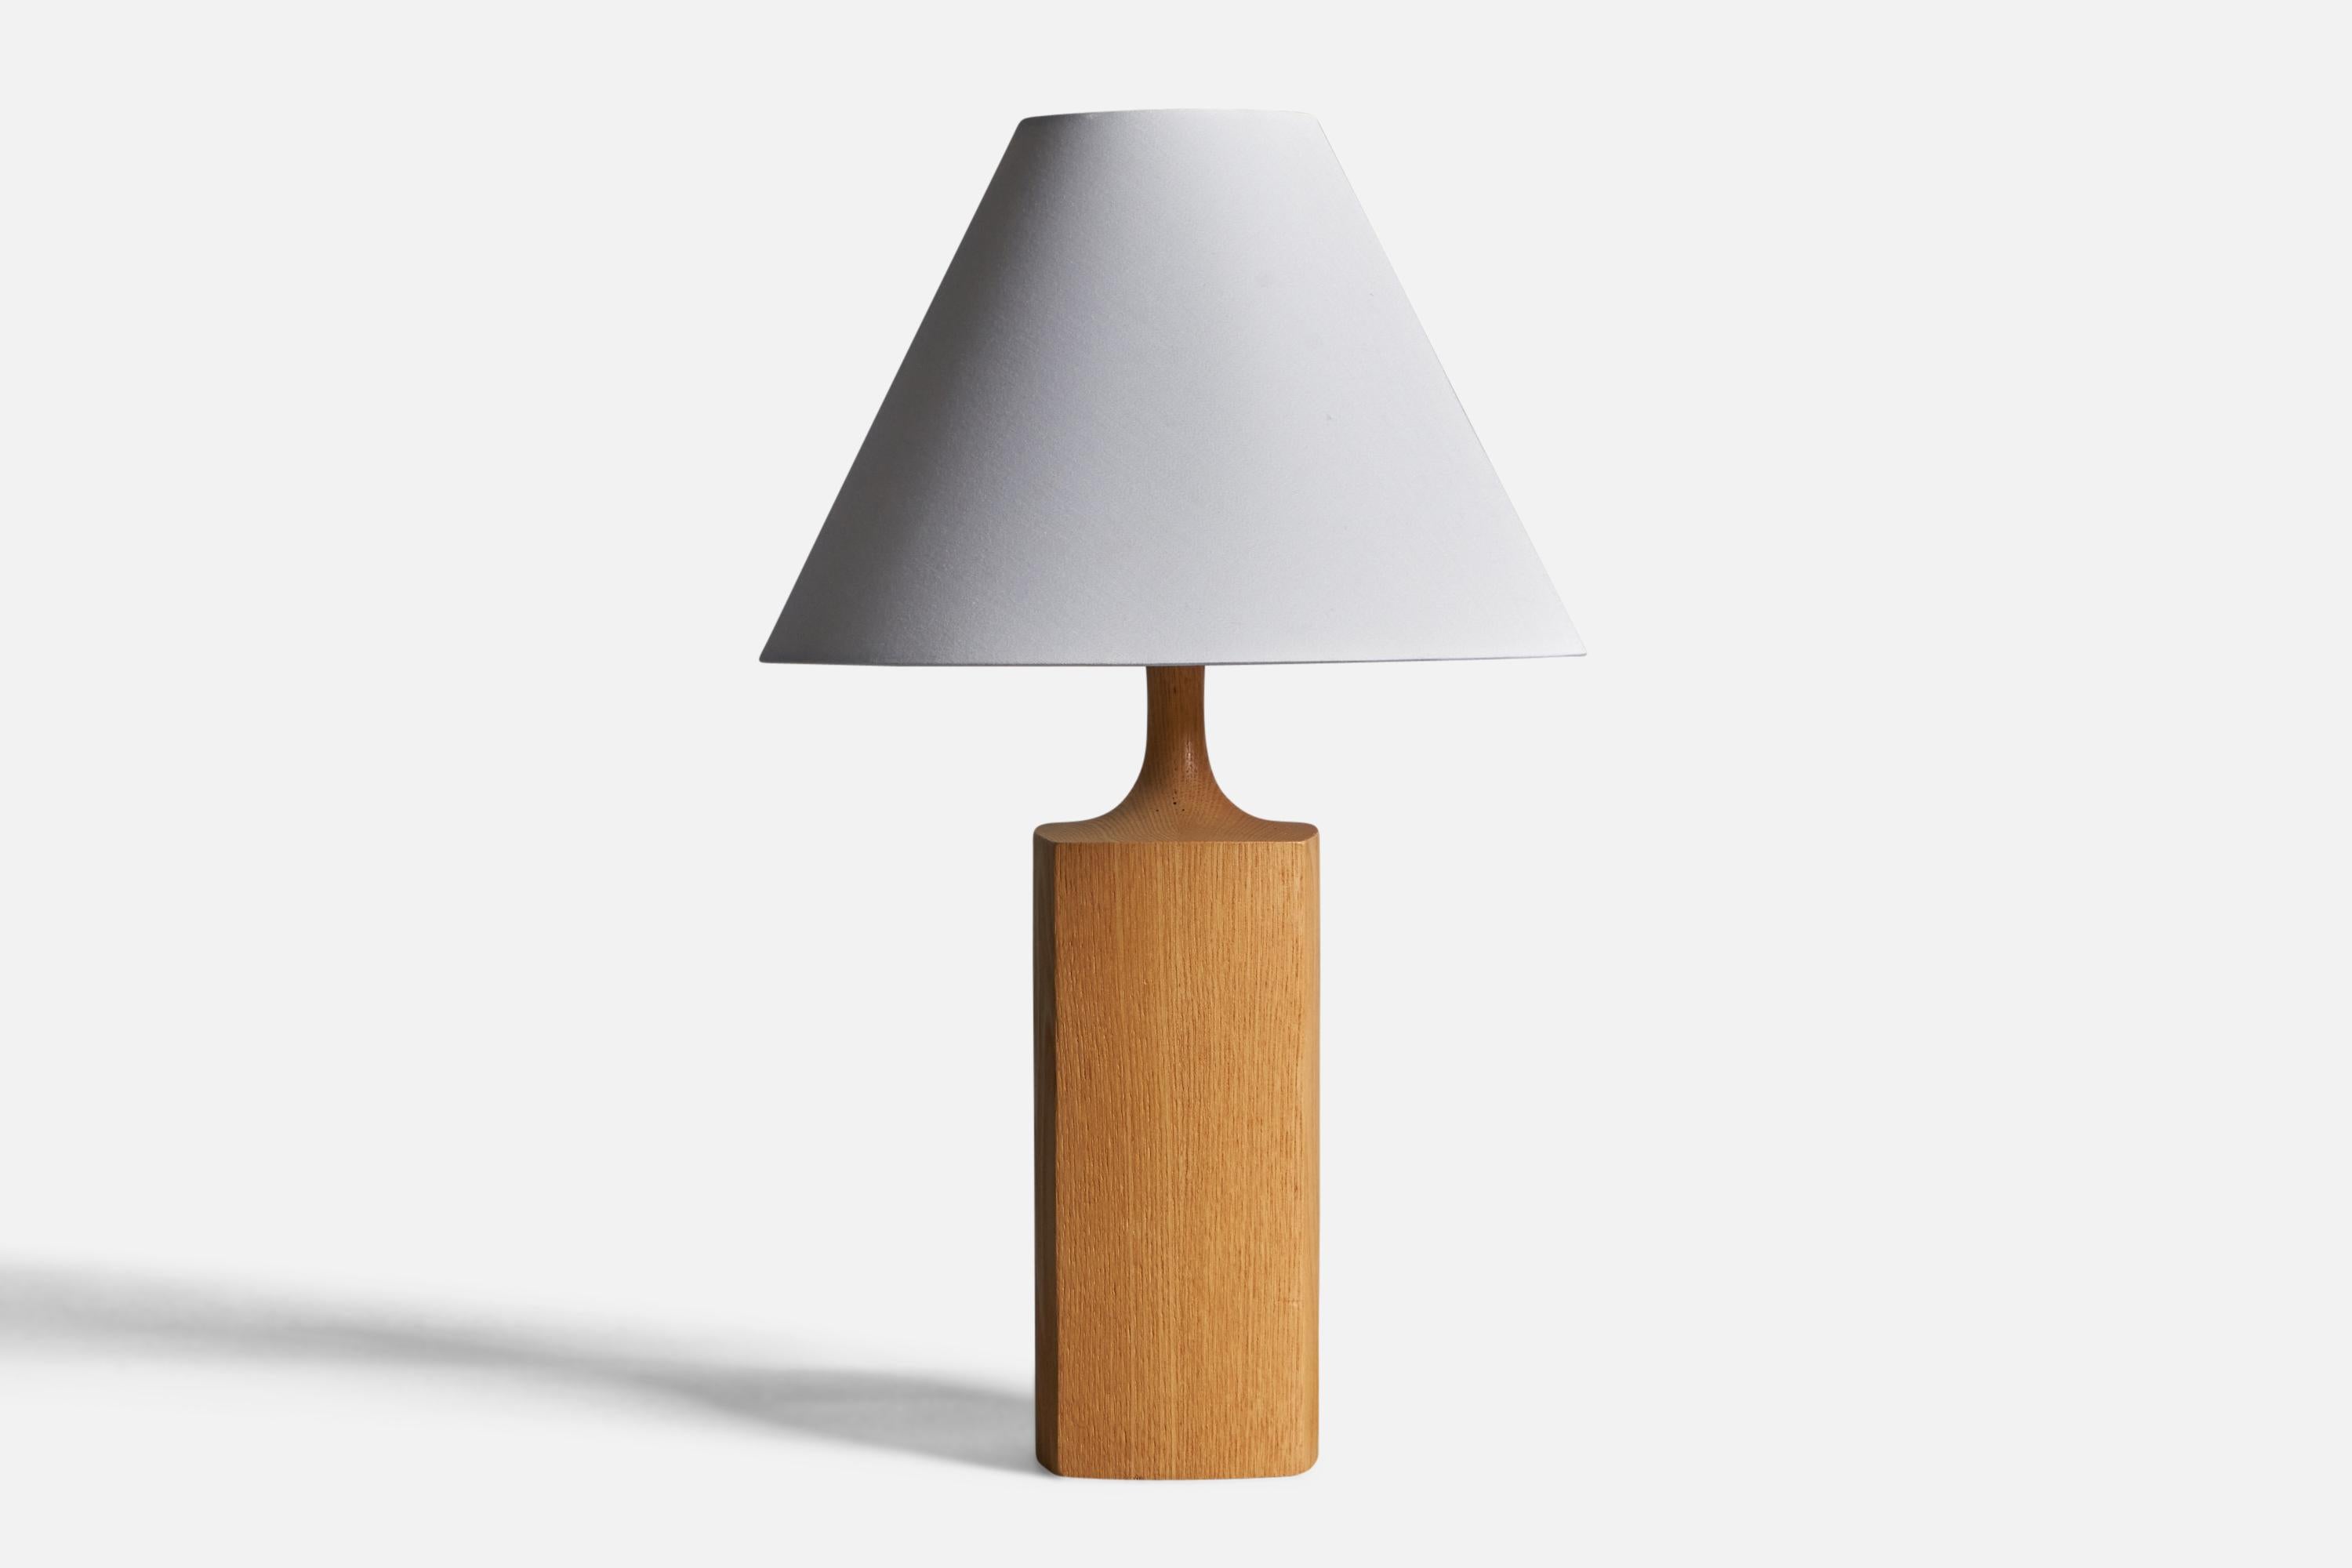 Lampe de table en chêne conçue et produite par Kjell Blomberg, Suède, années 1970.

Dimensions de la lampe (pouces) : 13.3